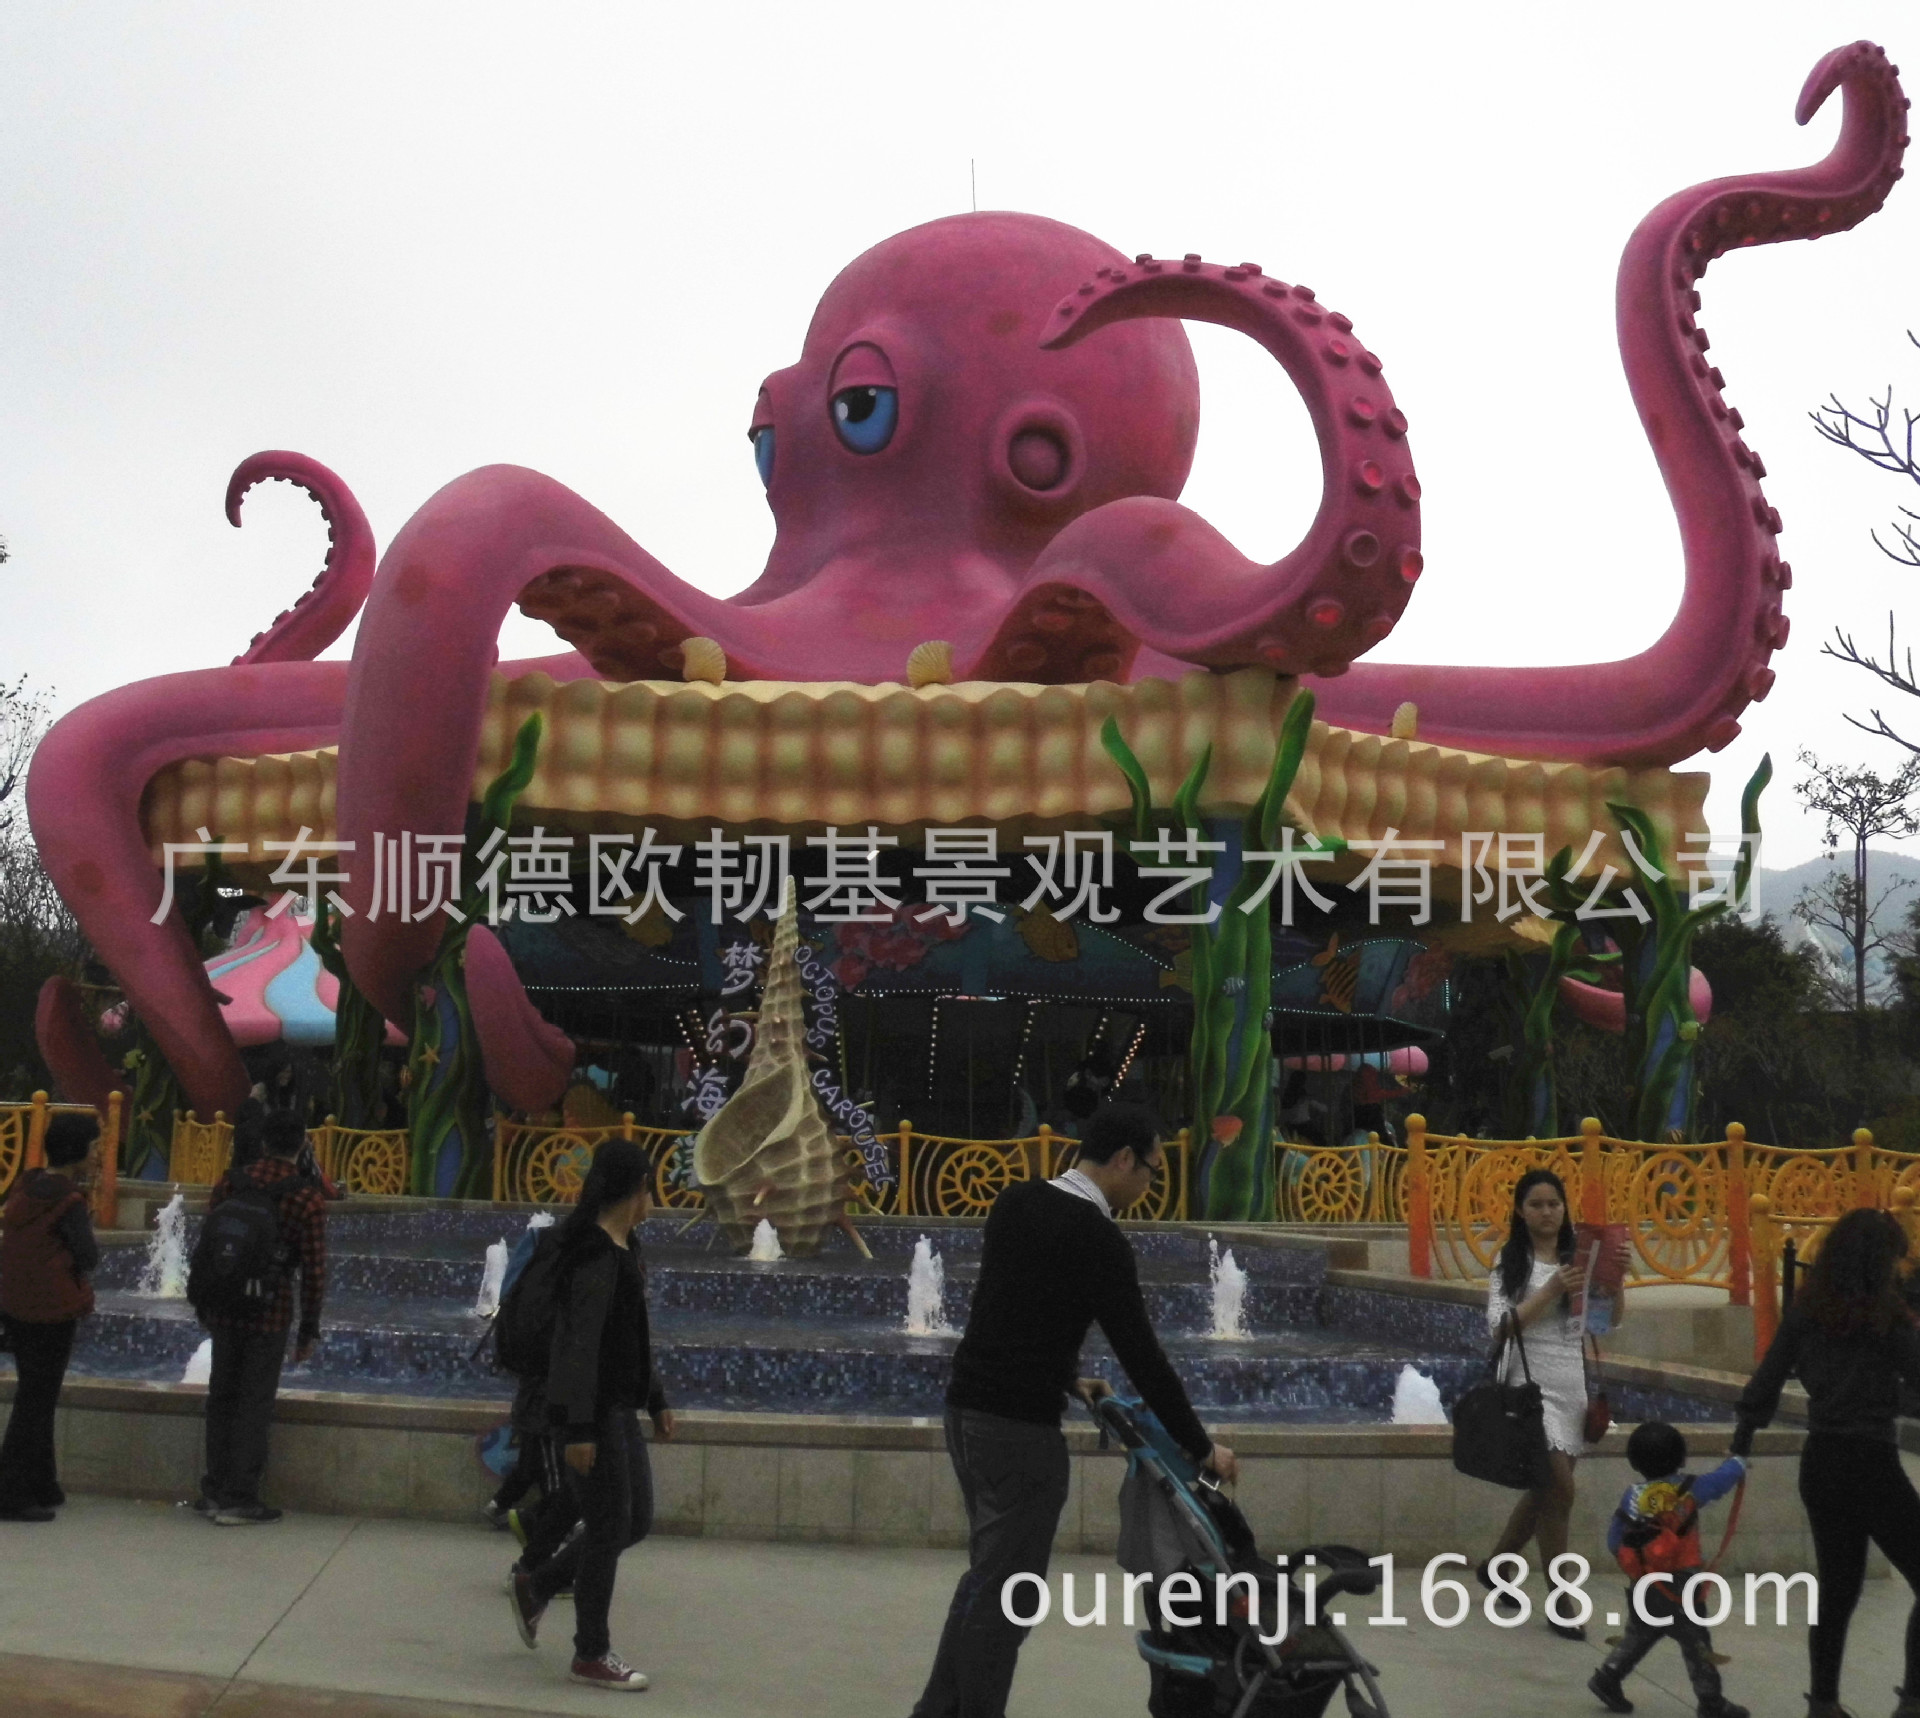 中国国家海洋博物馆船体状屋顶群 - 普象网